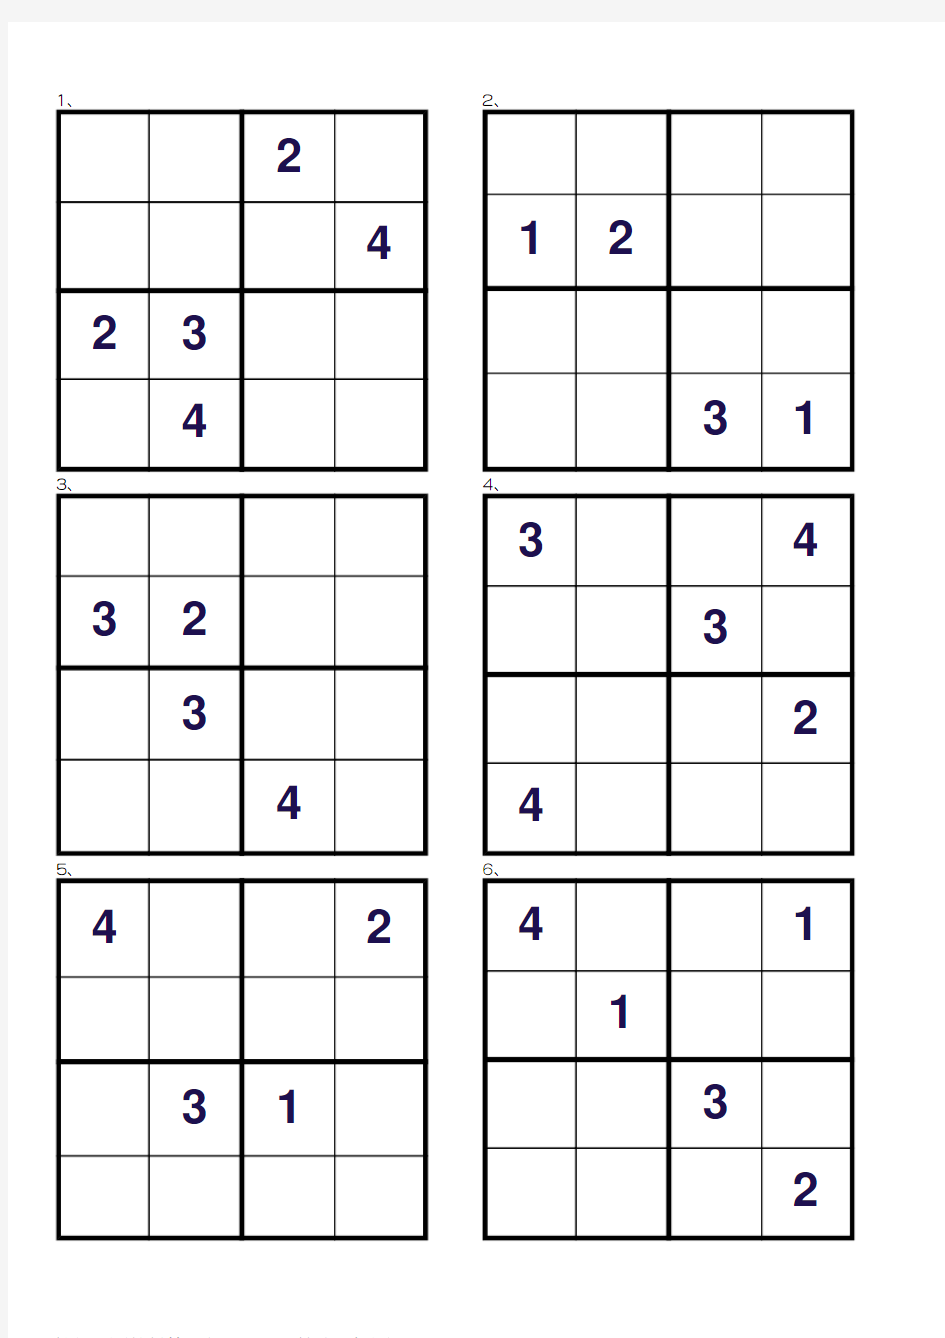 数独入门儿童数独游戏第4级二余法4x4